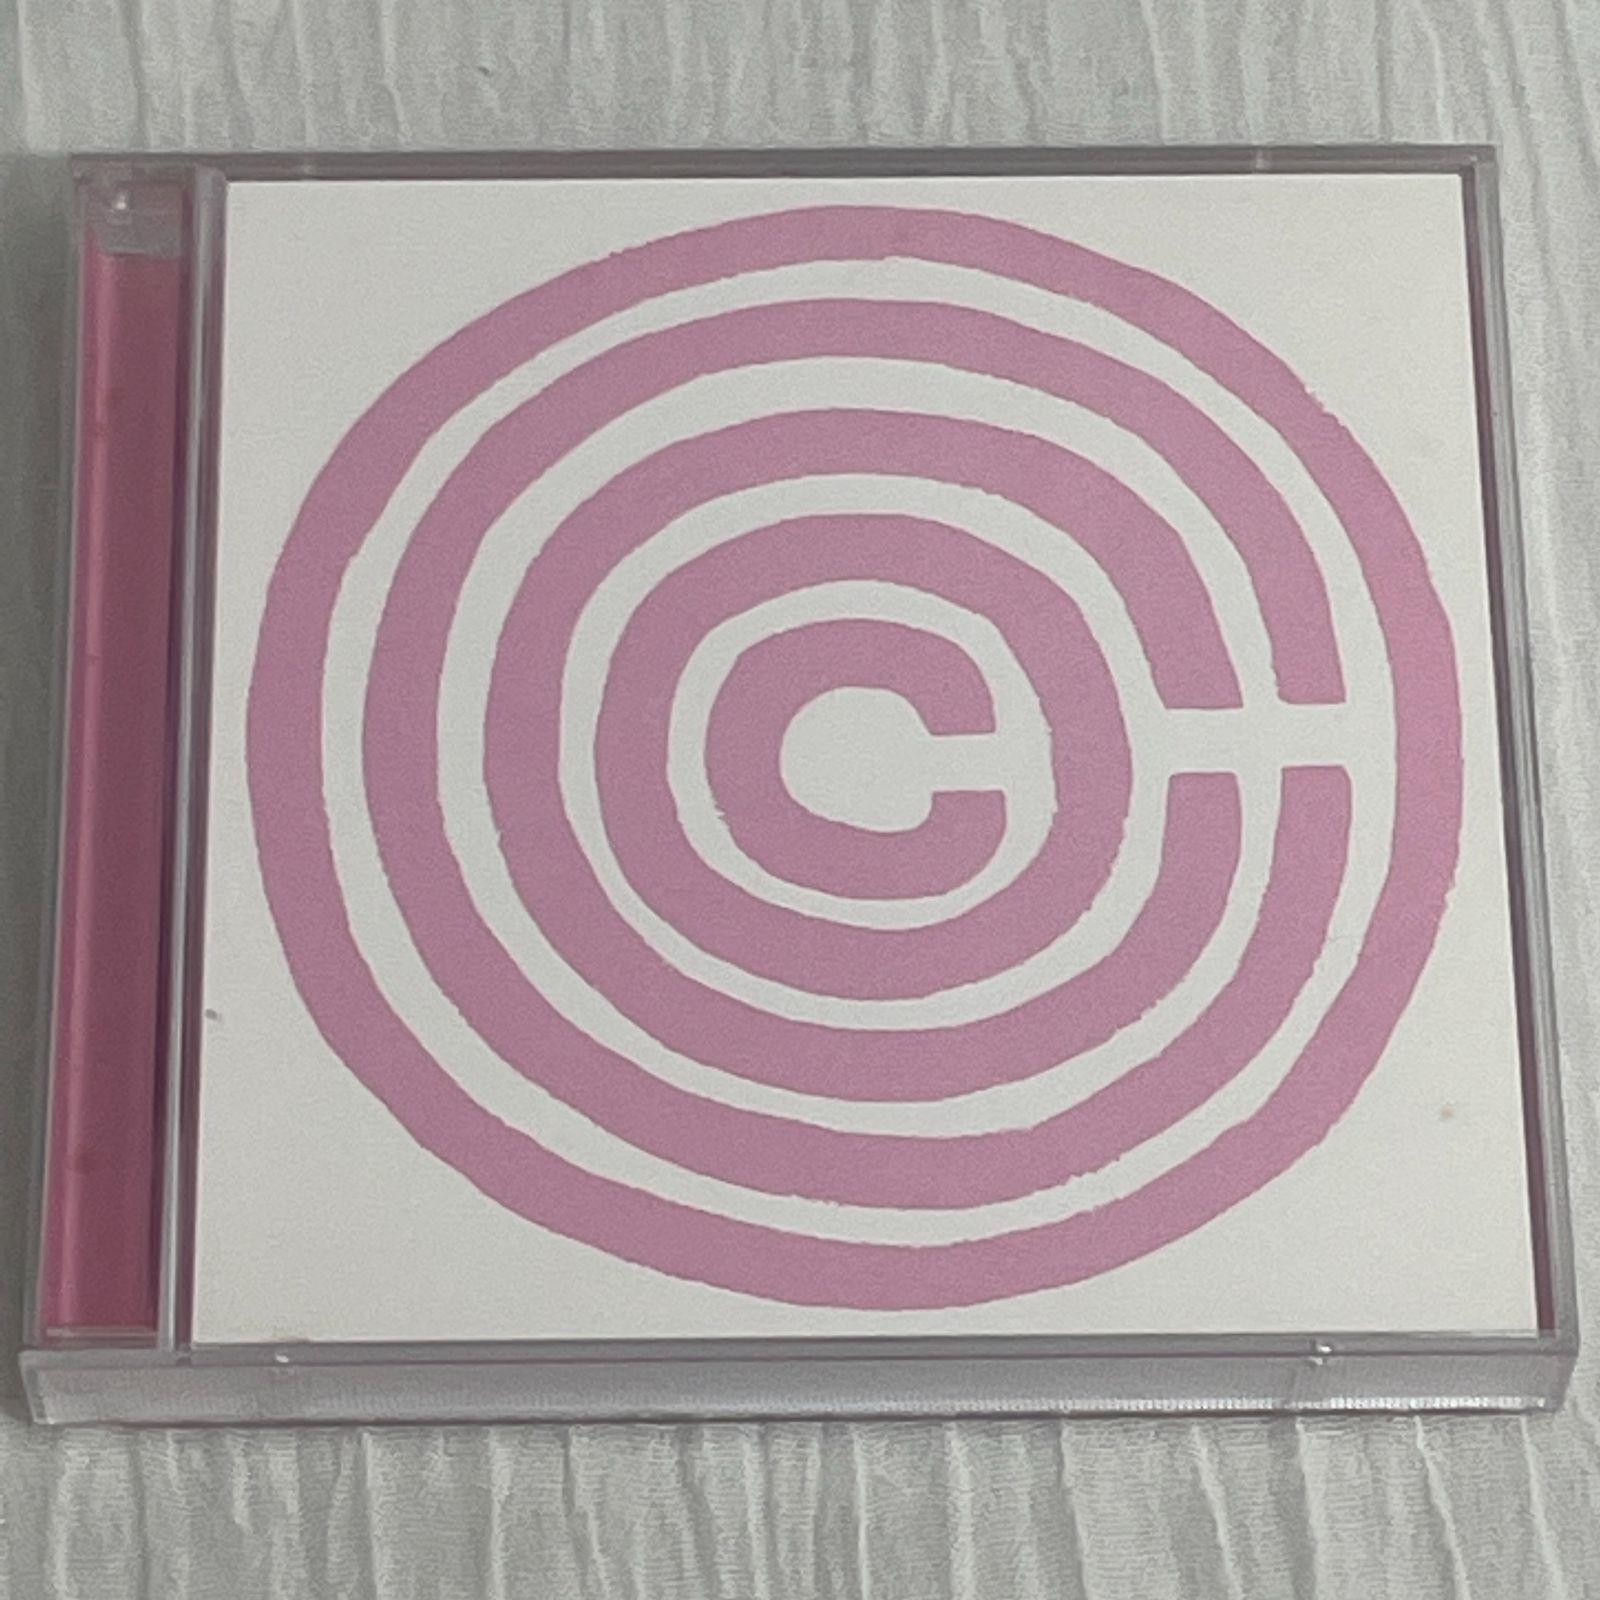 Cocco｜ベスト+裏ベスト+未発表曲集（中古CD 2枚組+ミニCD） - メルカリ